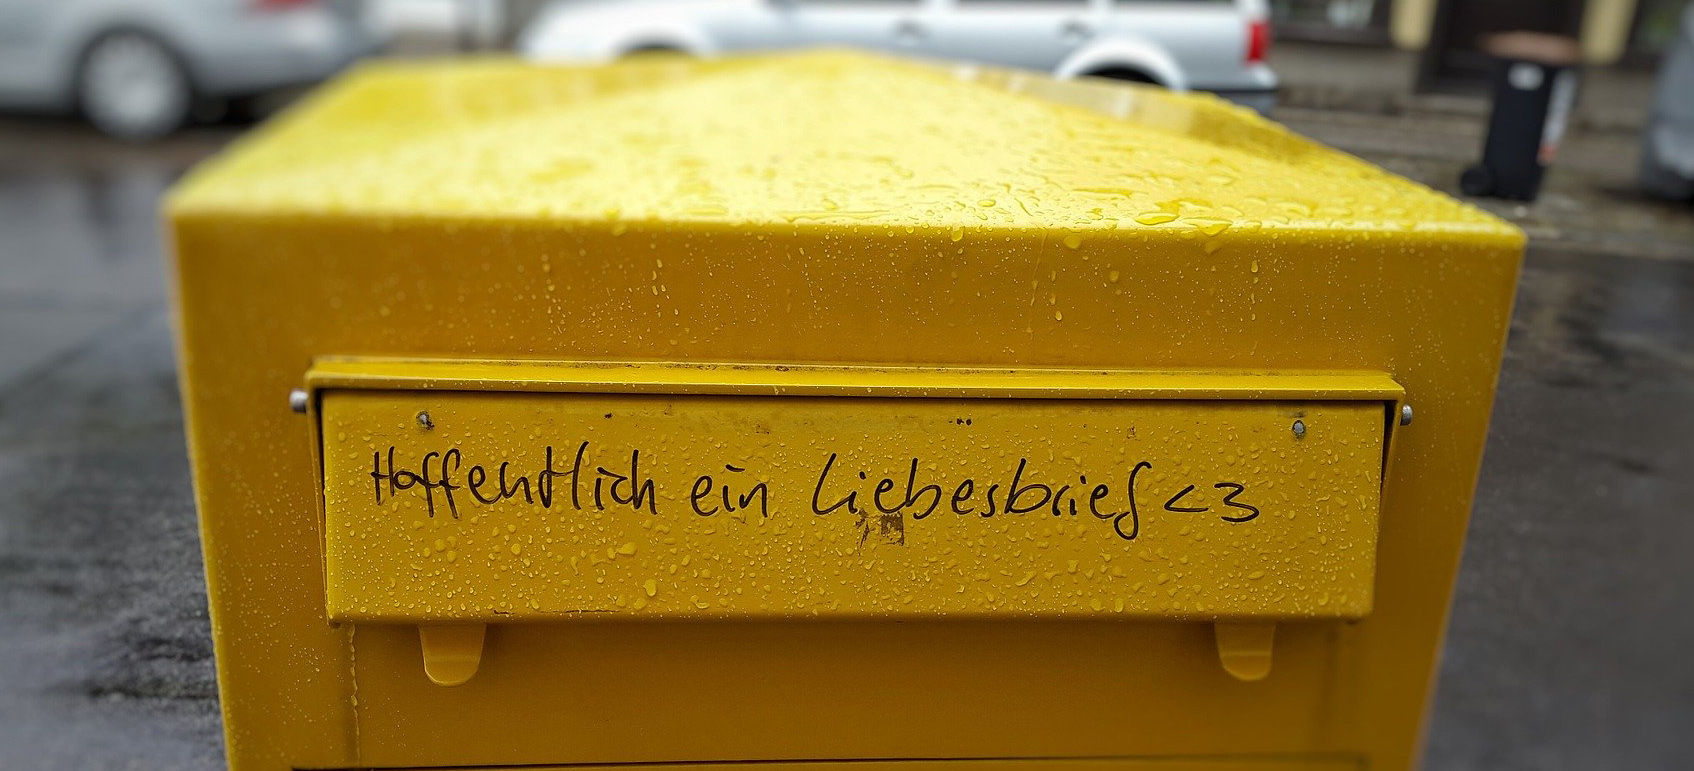 Eine Fotografie die einen alten gelben Briefkasten zeigt. Der Briefkasten steht für Kontakt - er ist regennass und auf dem Deckel über dem einwurfschlitz steht mit schwarzen Edding stift geschrieben: "Hoffentlich ein Liebesbrief!"